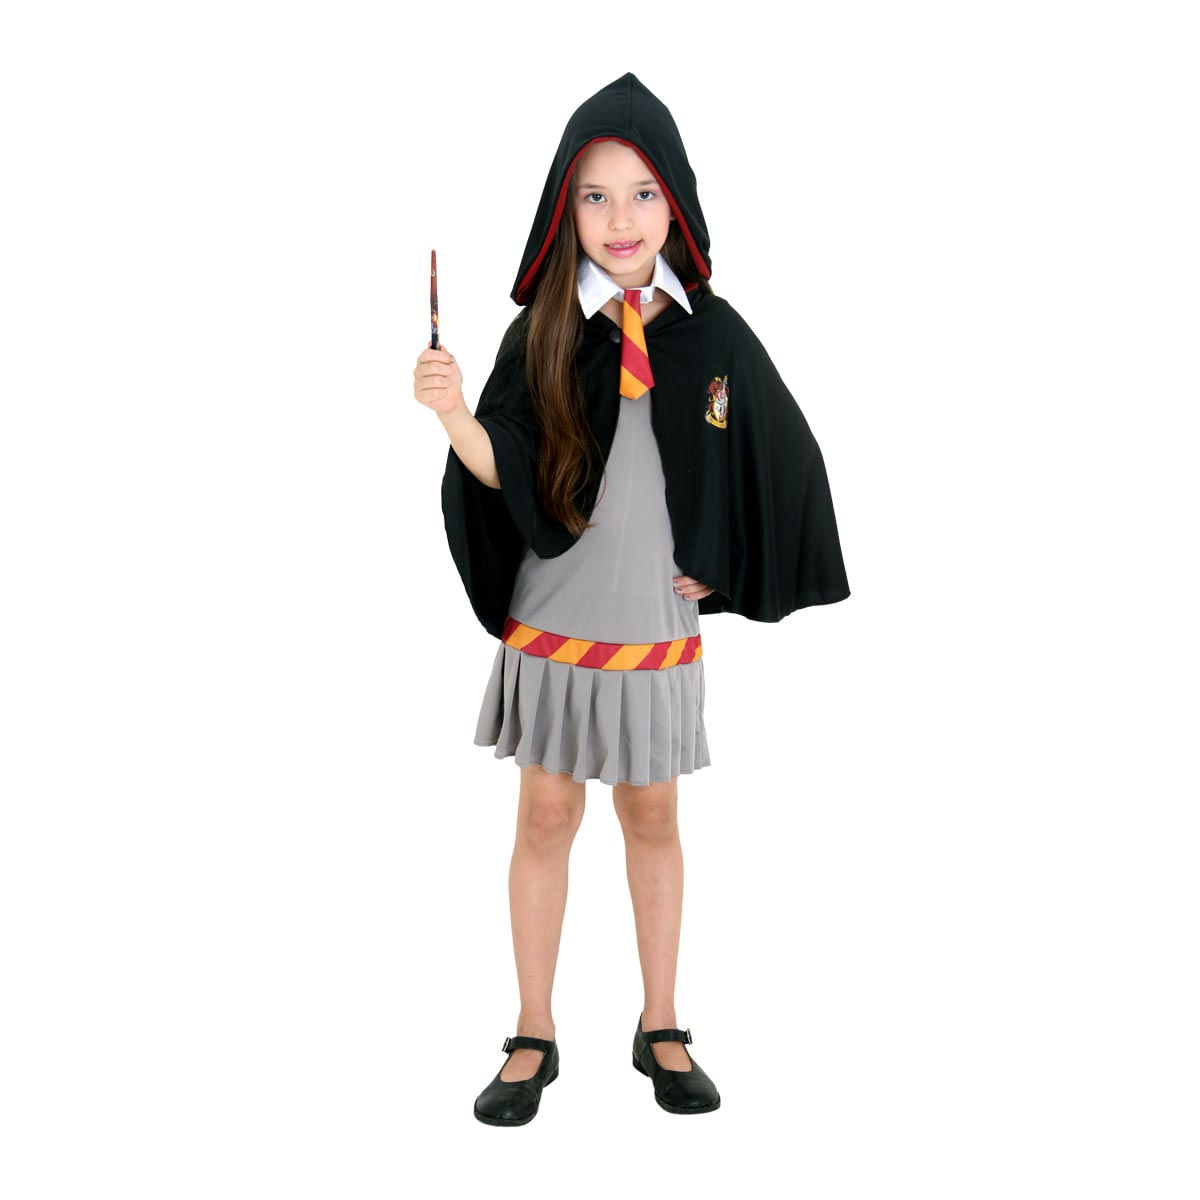 Fantasia Hermione Grifinória Infantil Original - Harry Potter P / UNICA